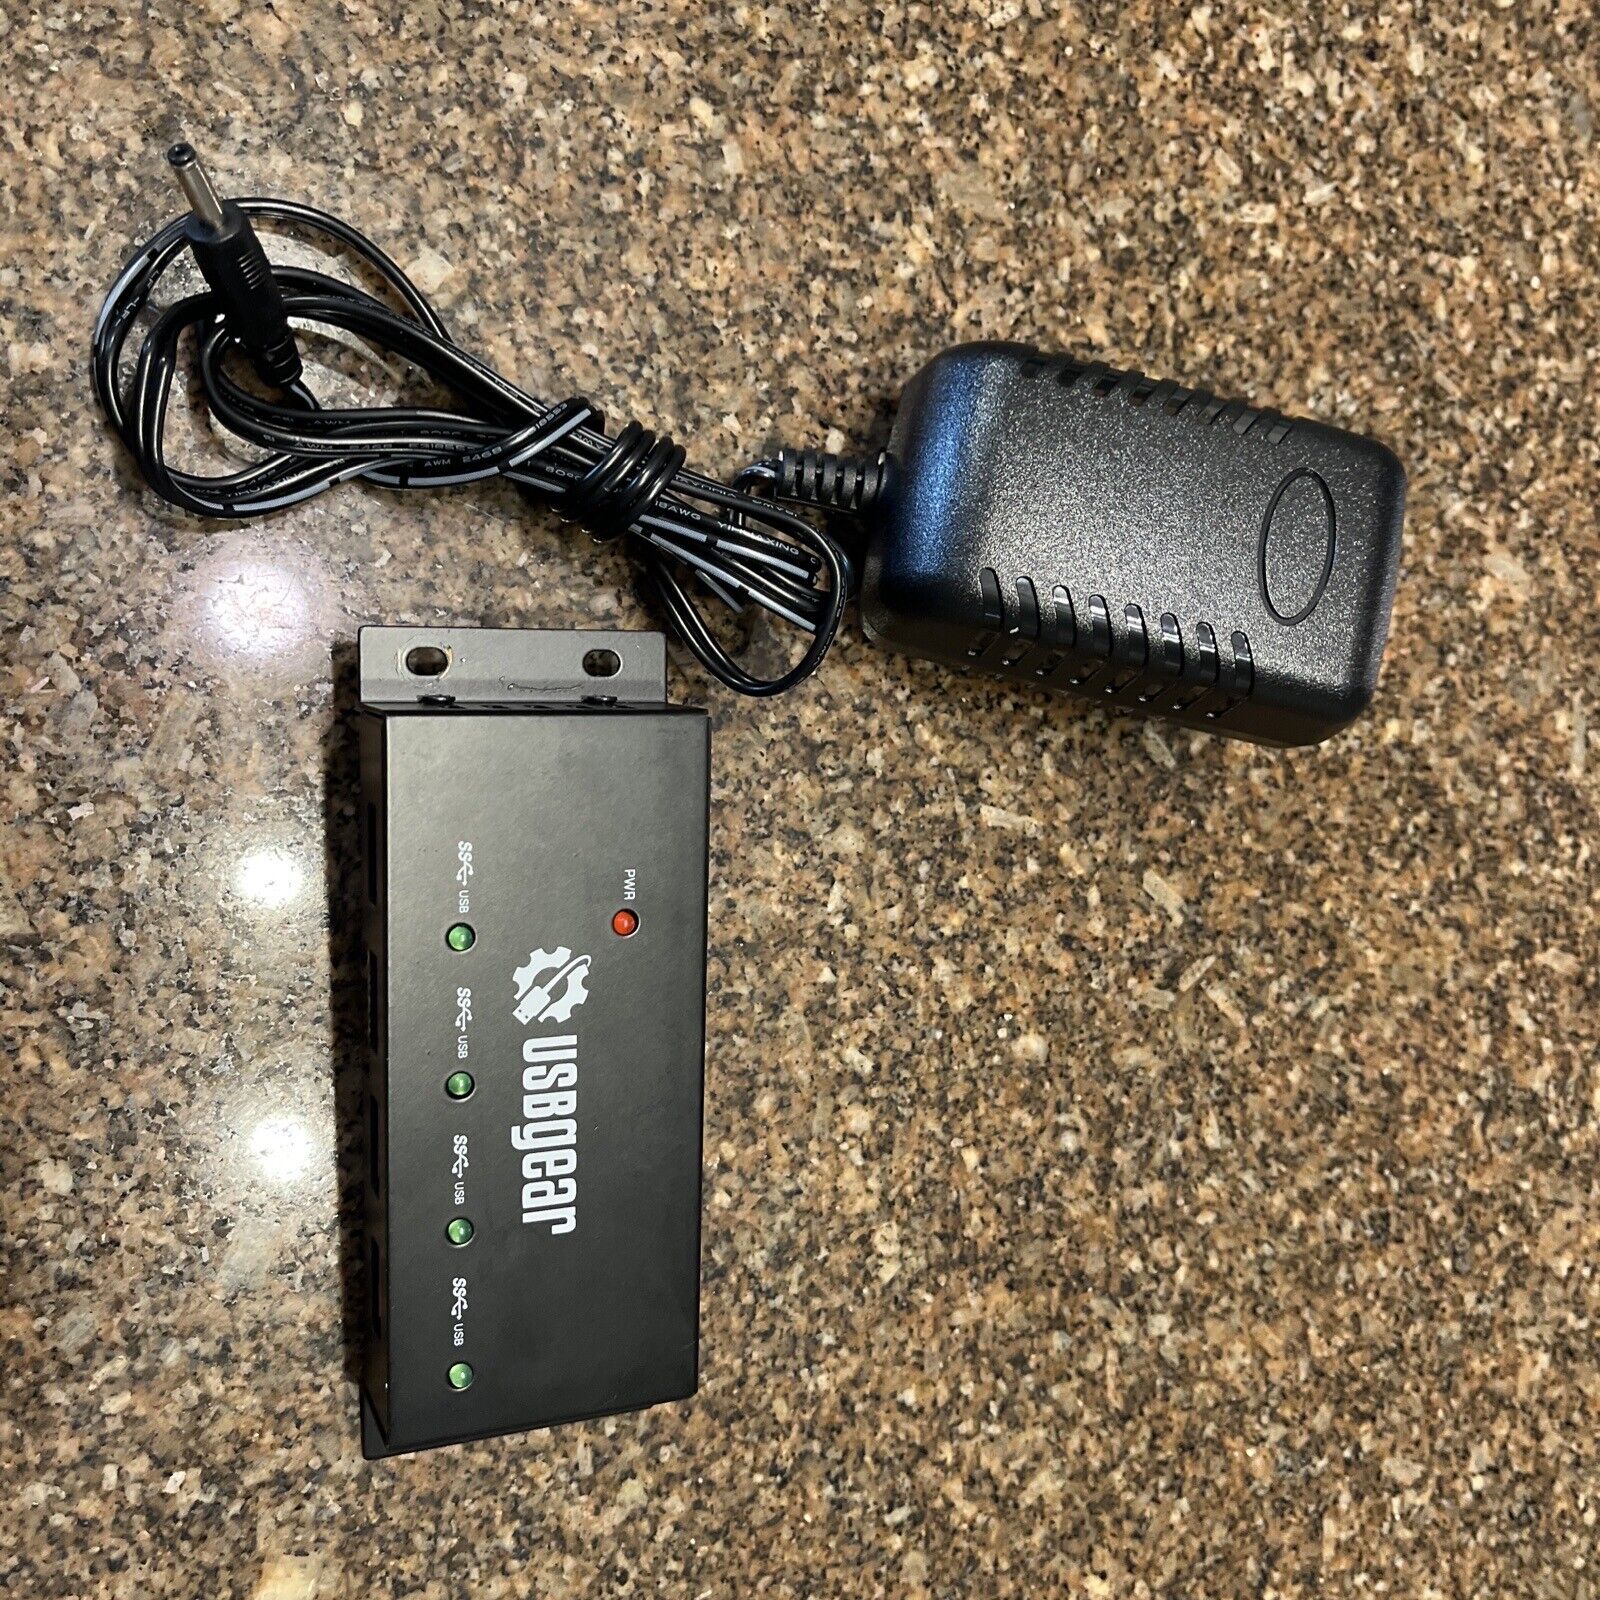 USBGear USB 3.0 4 Port Power Hub Super Speed Metal Case